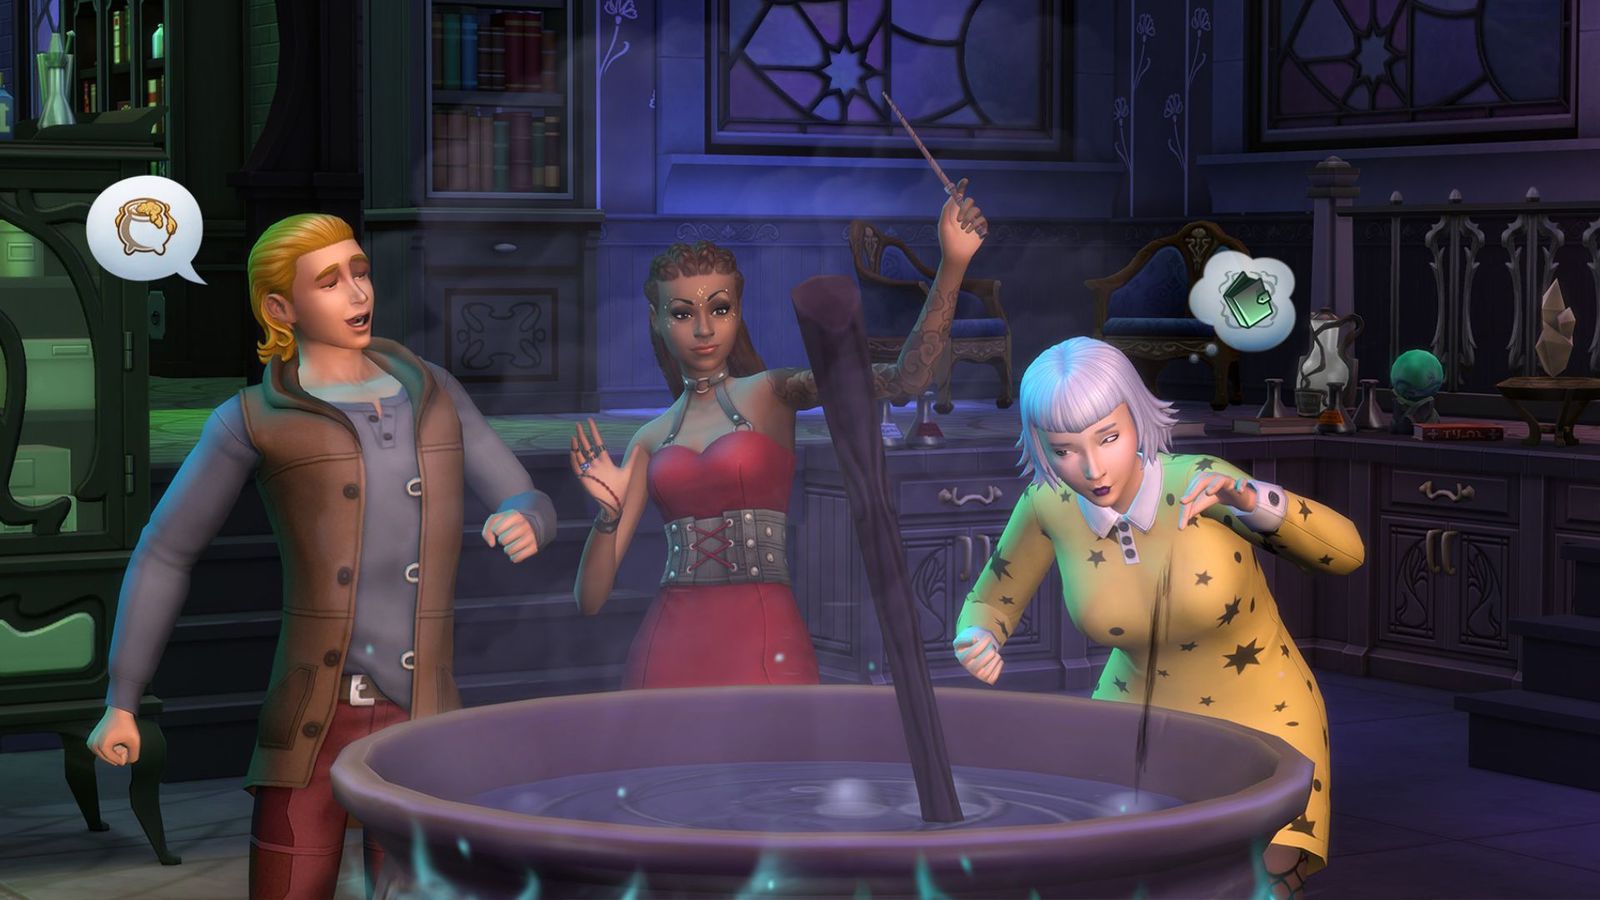 Sims gathered around a cauldron